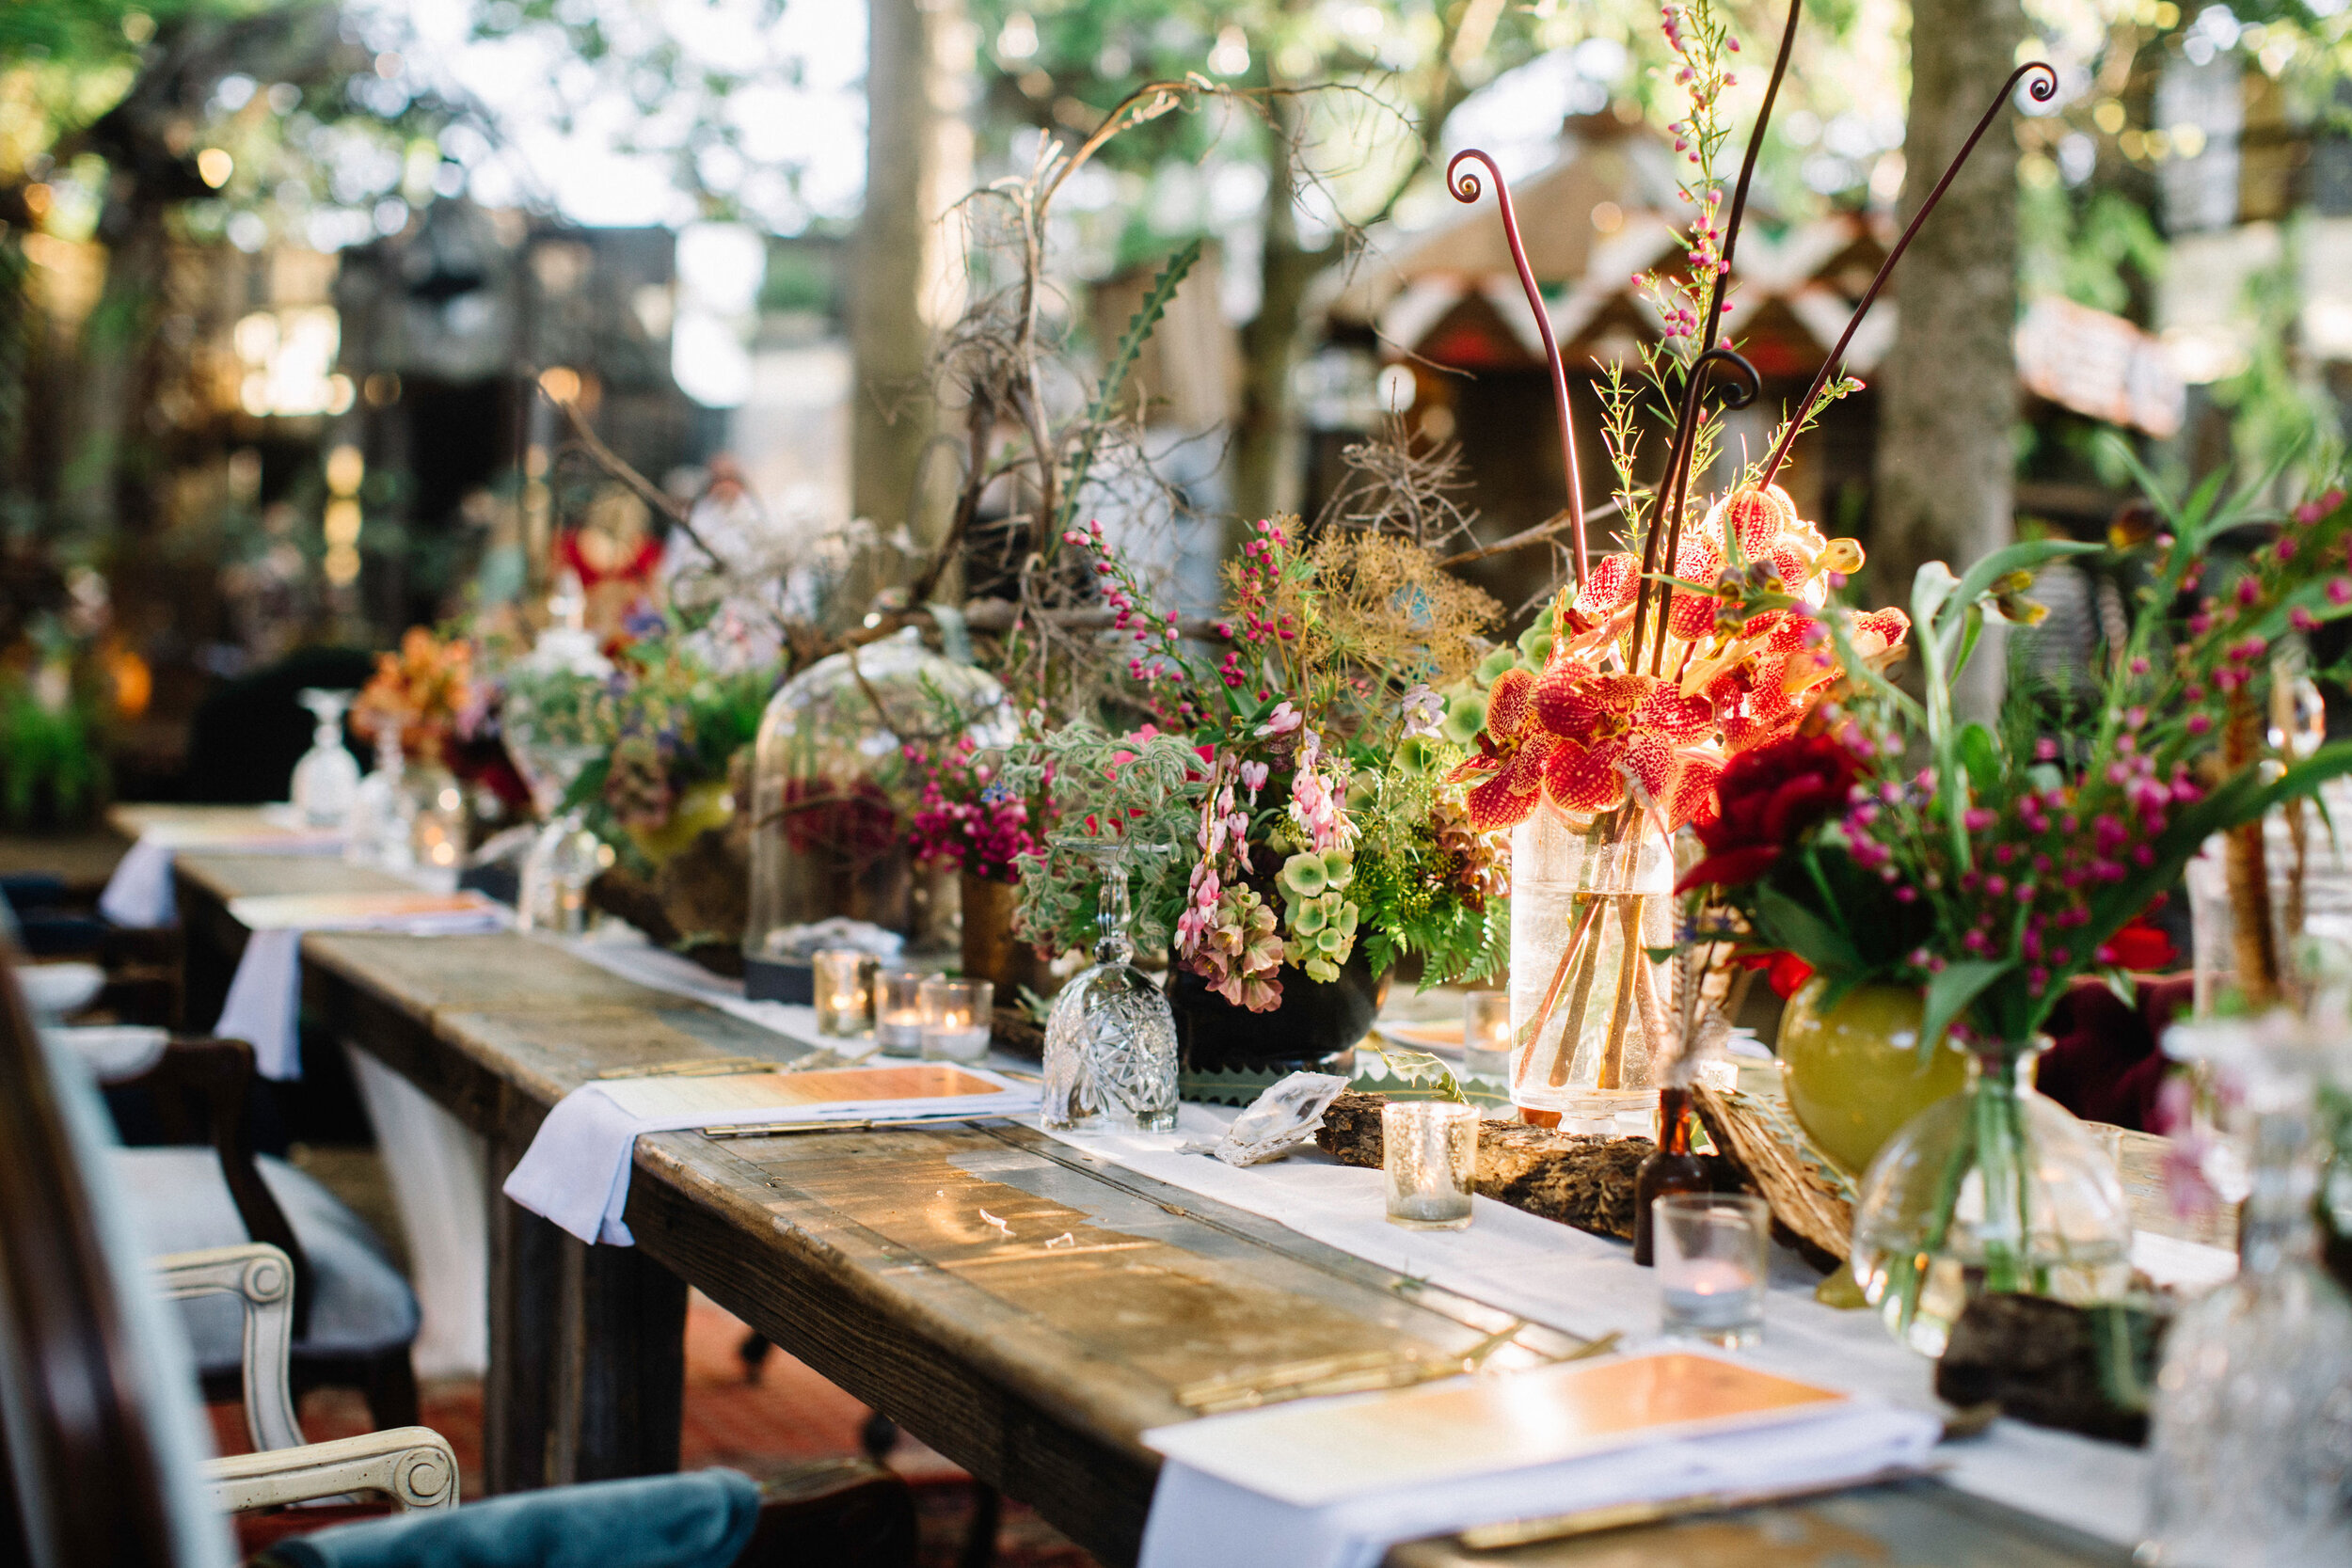 The magical dinner table spread